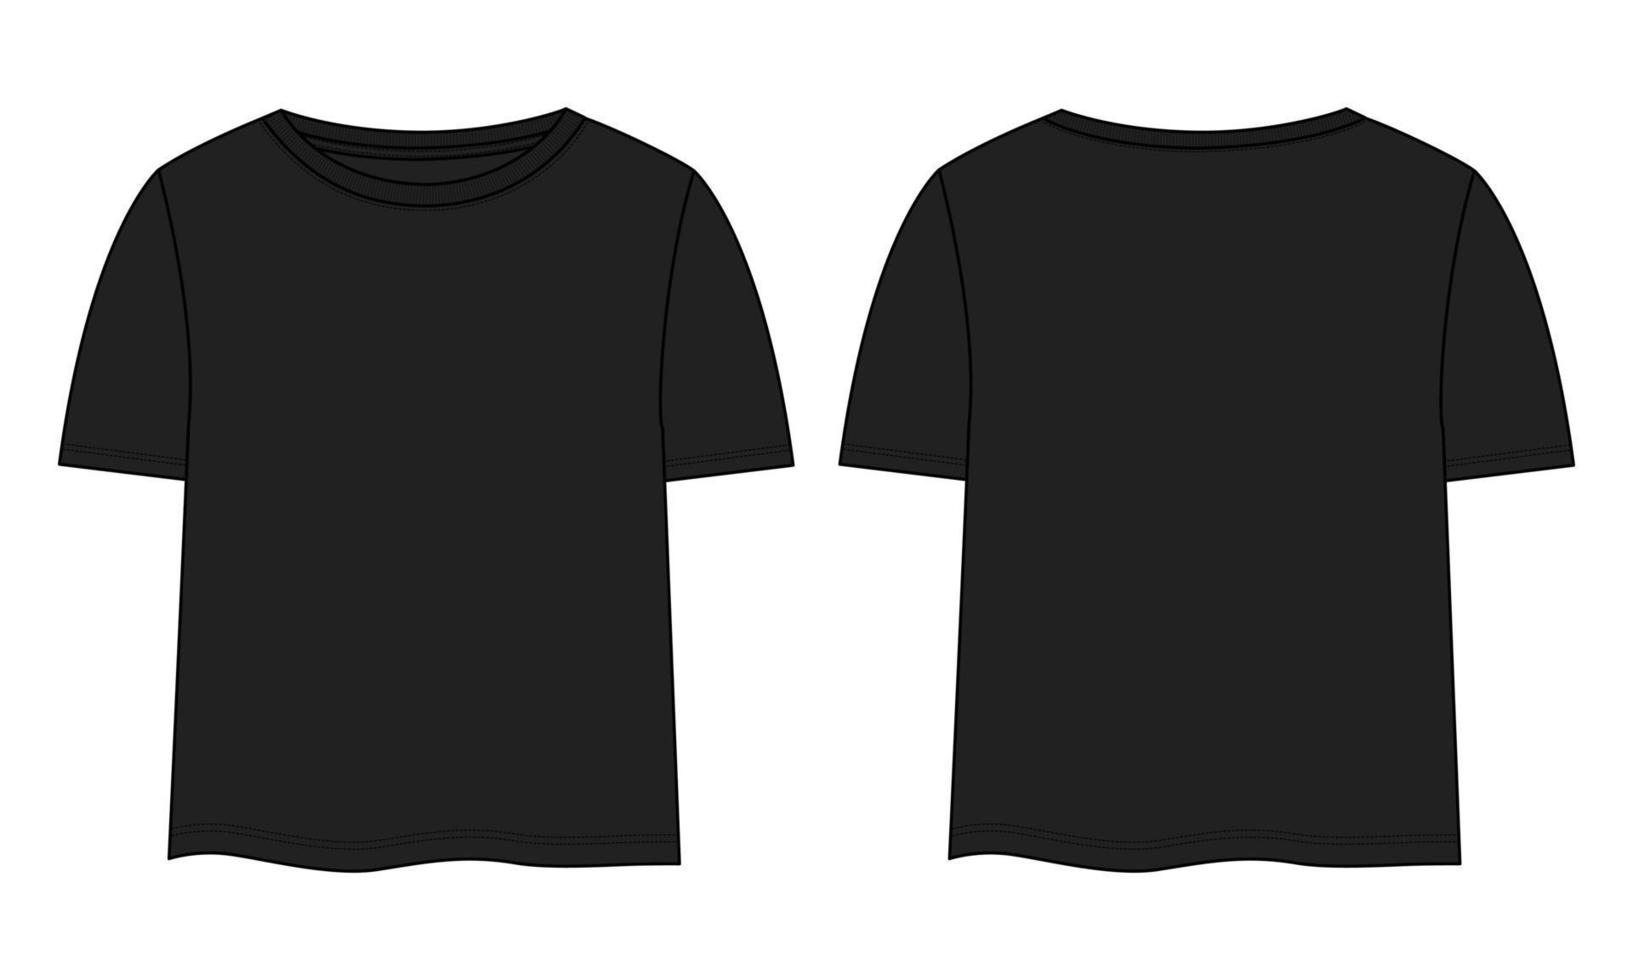 camiseta tops modelo de desenho plano de moda técnica vetor preto modelo de cor para senhoras e bebés